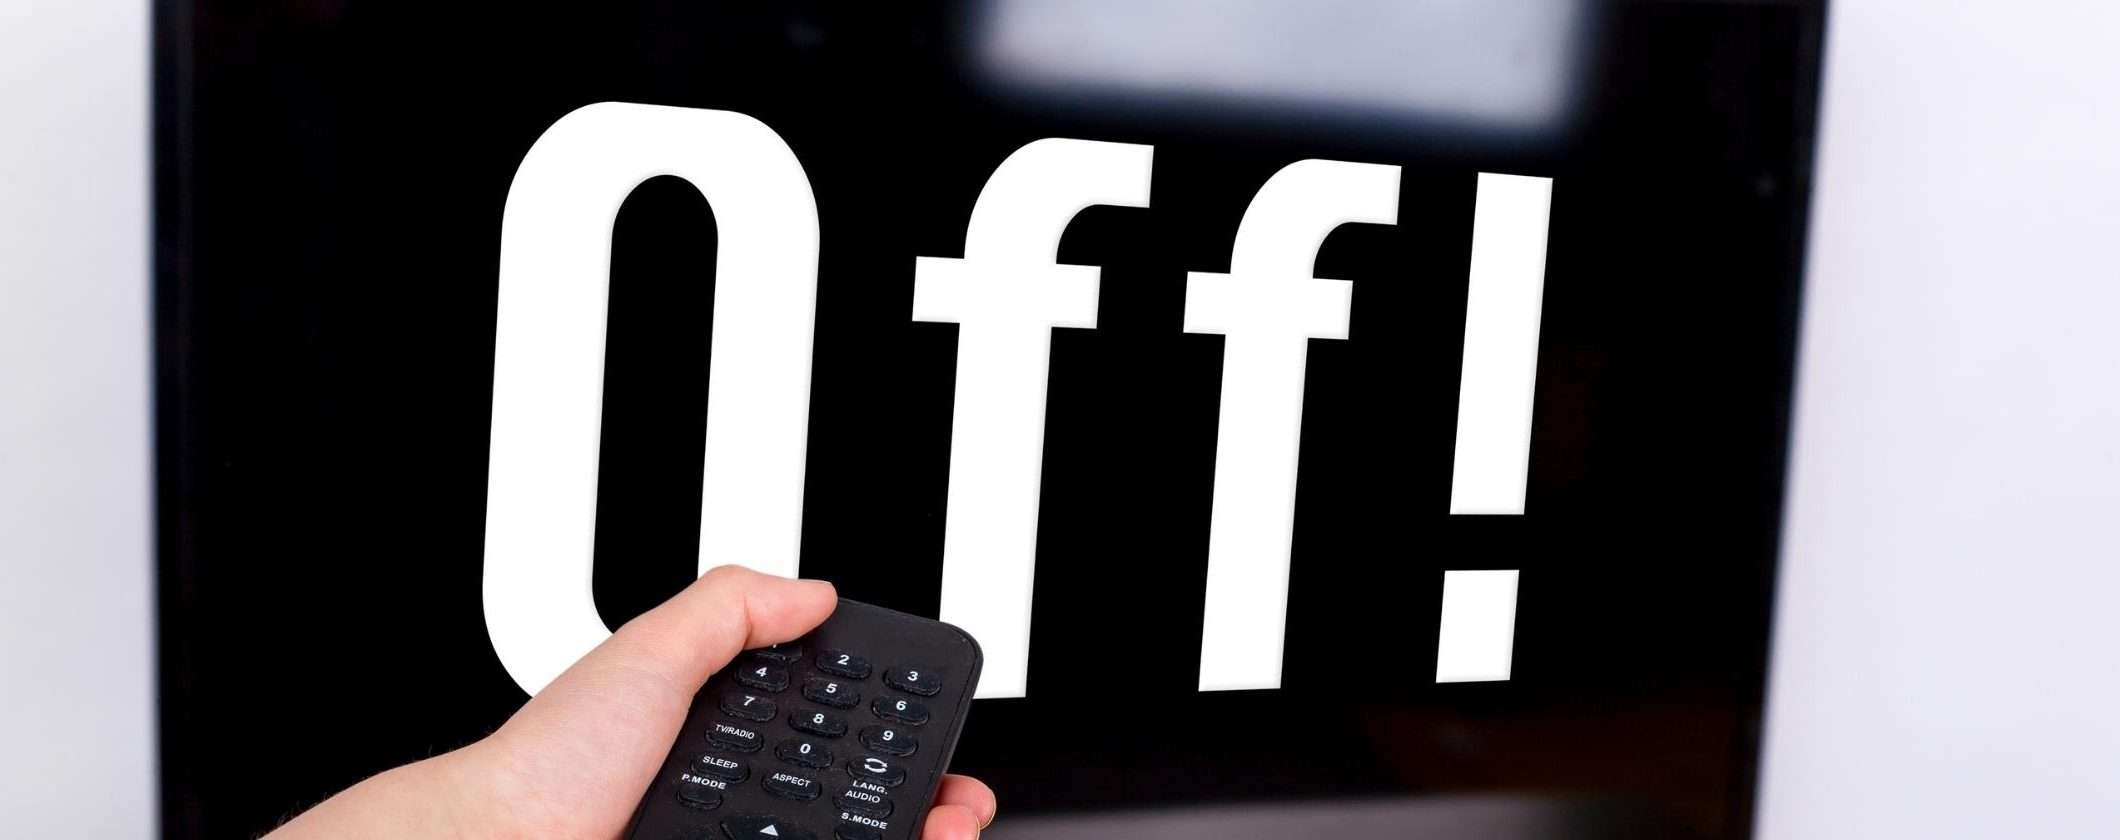 Digitale terrestre e switch off: quando i vecchi televisori moriranno